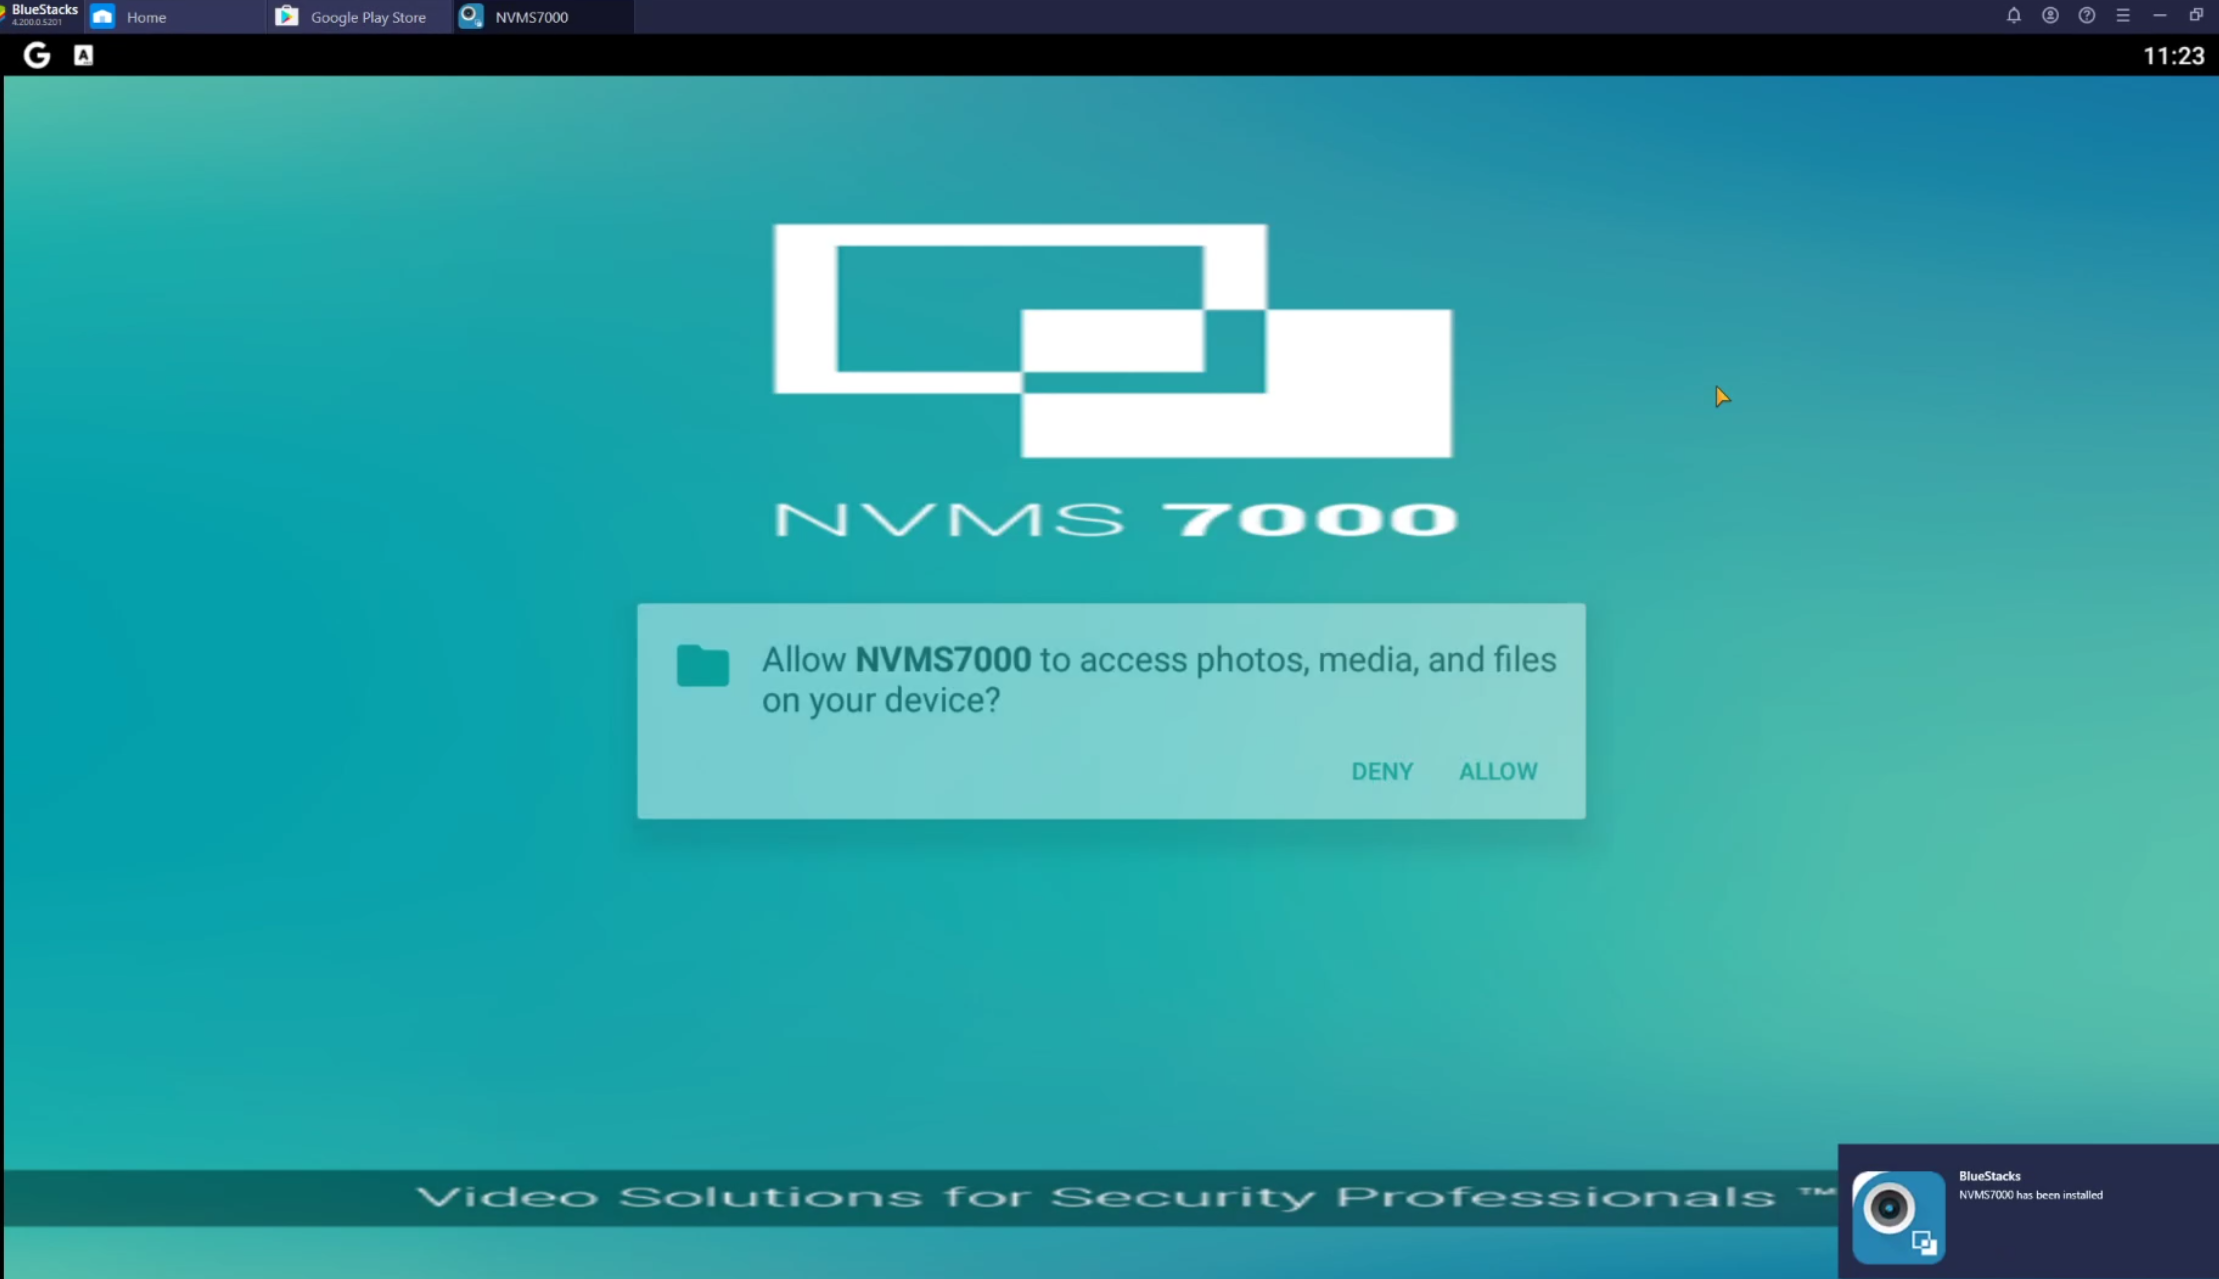 nvms7000 download windows 10